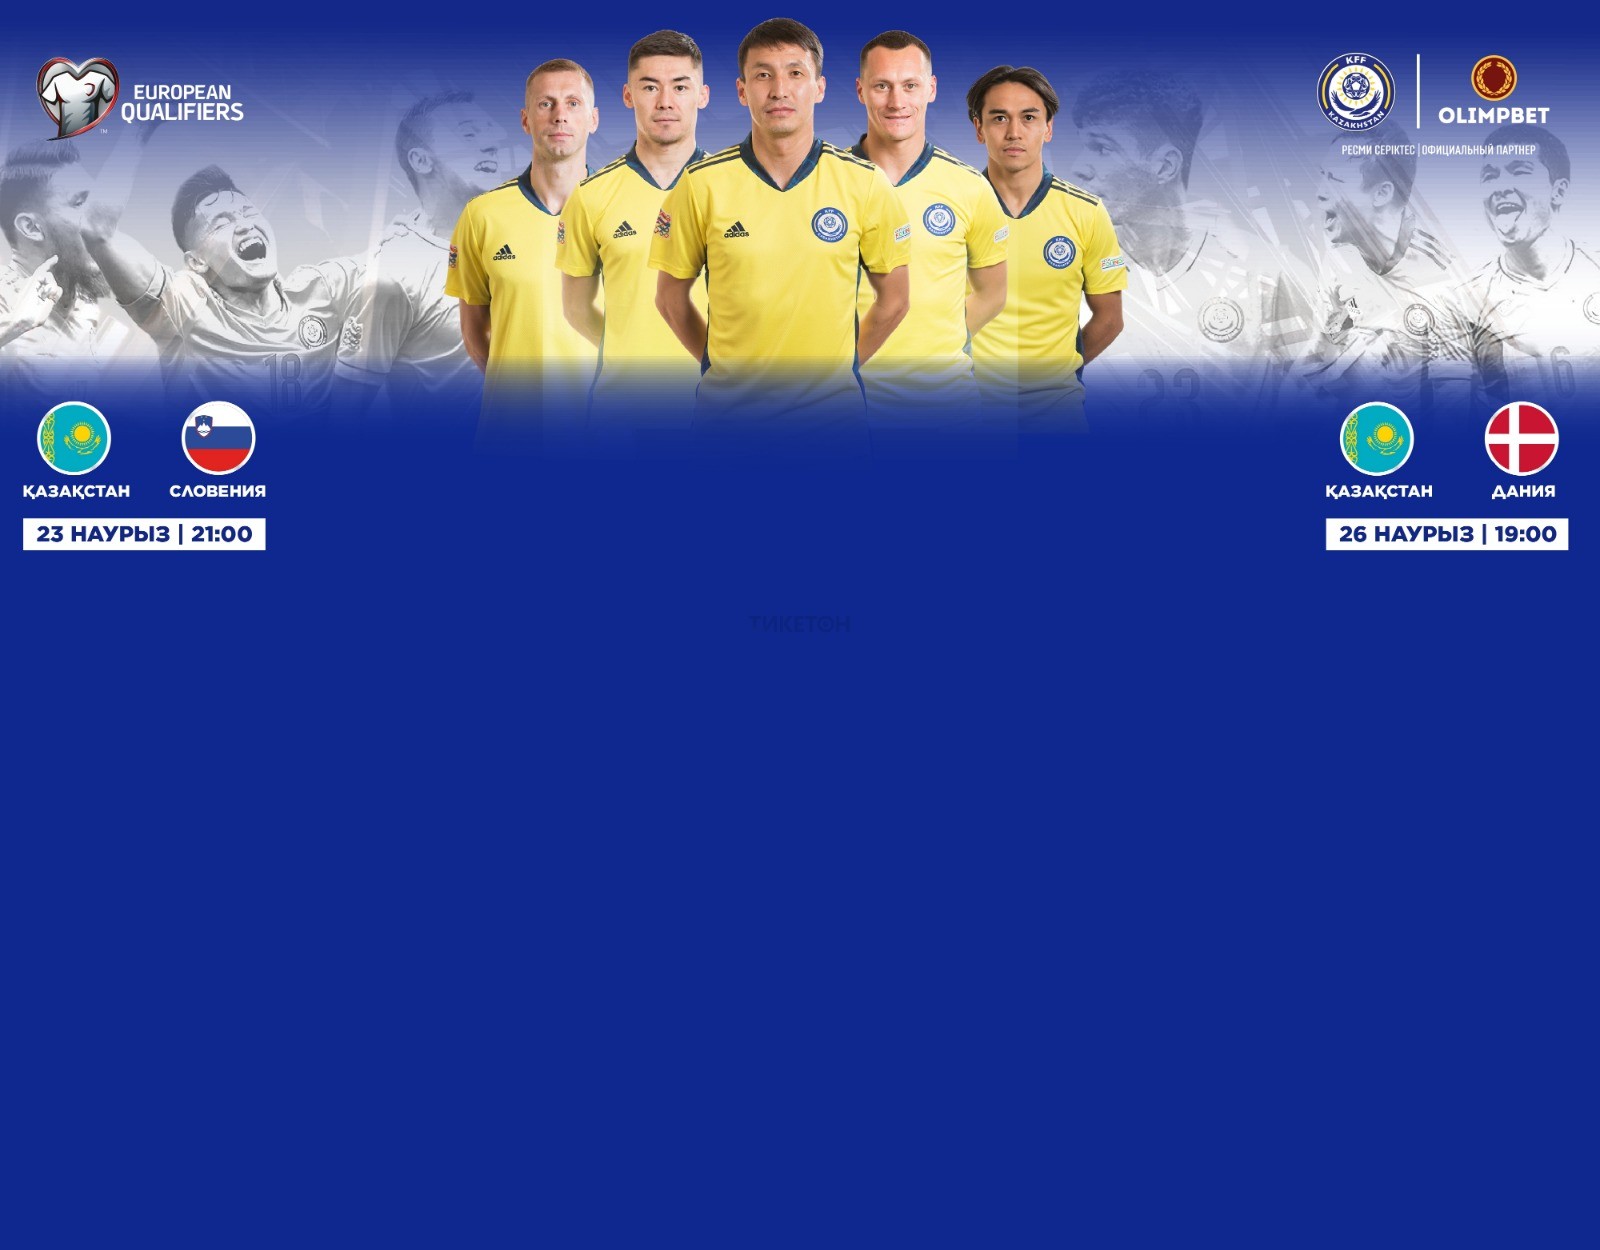 Казахстан - Словения 2023